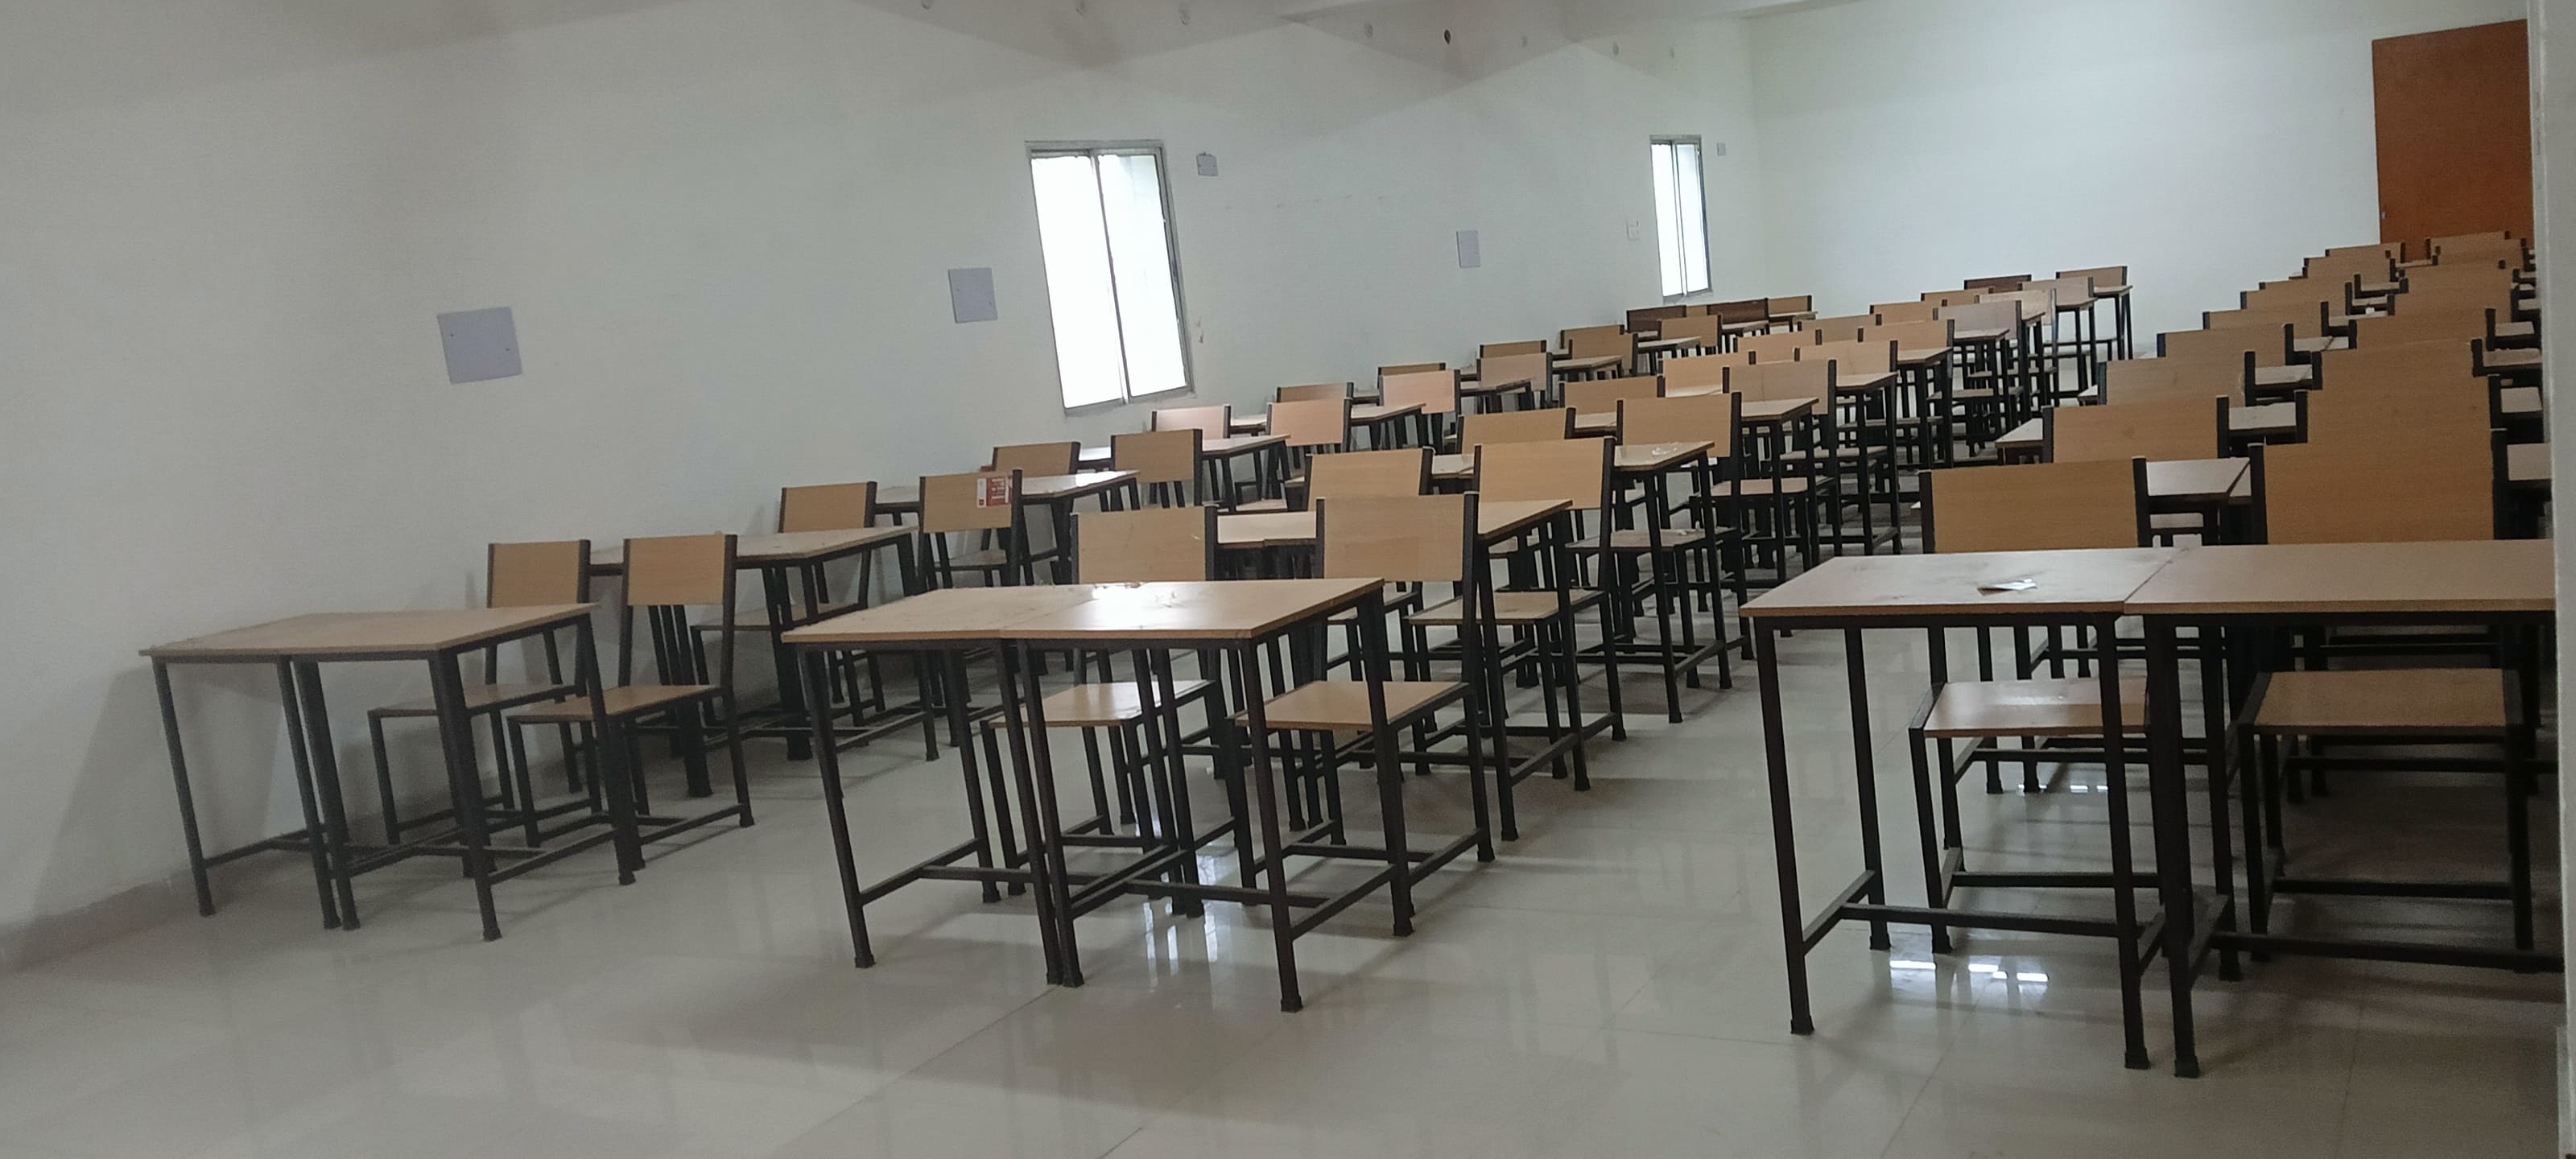 AHS Nursing College Classroom